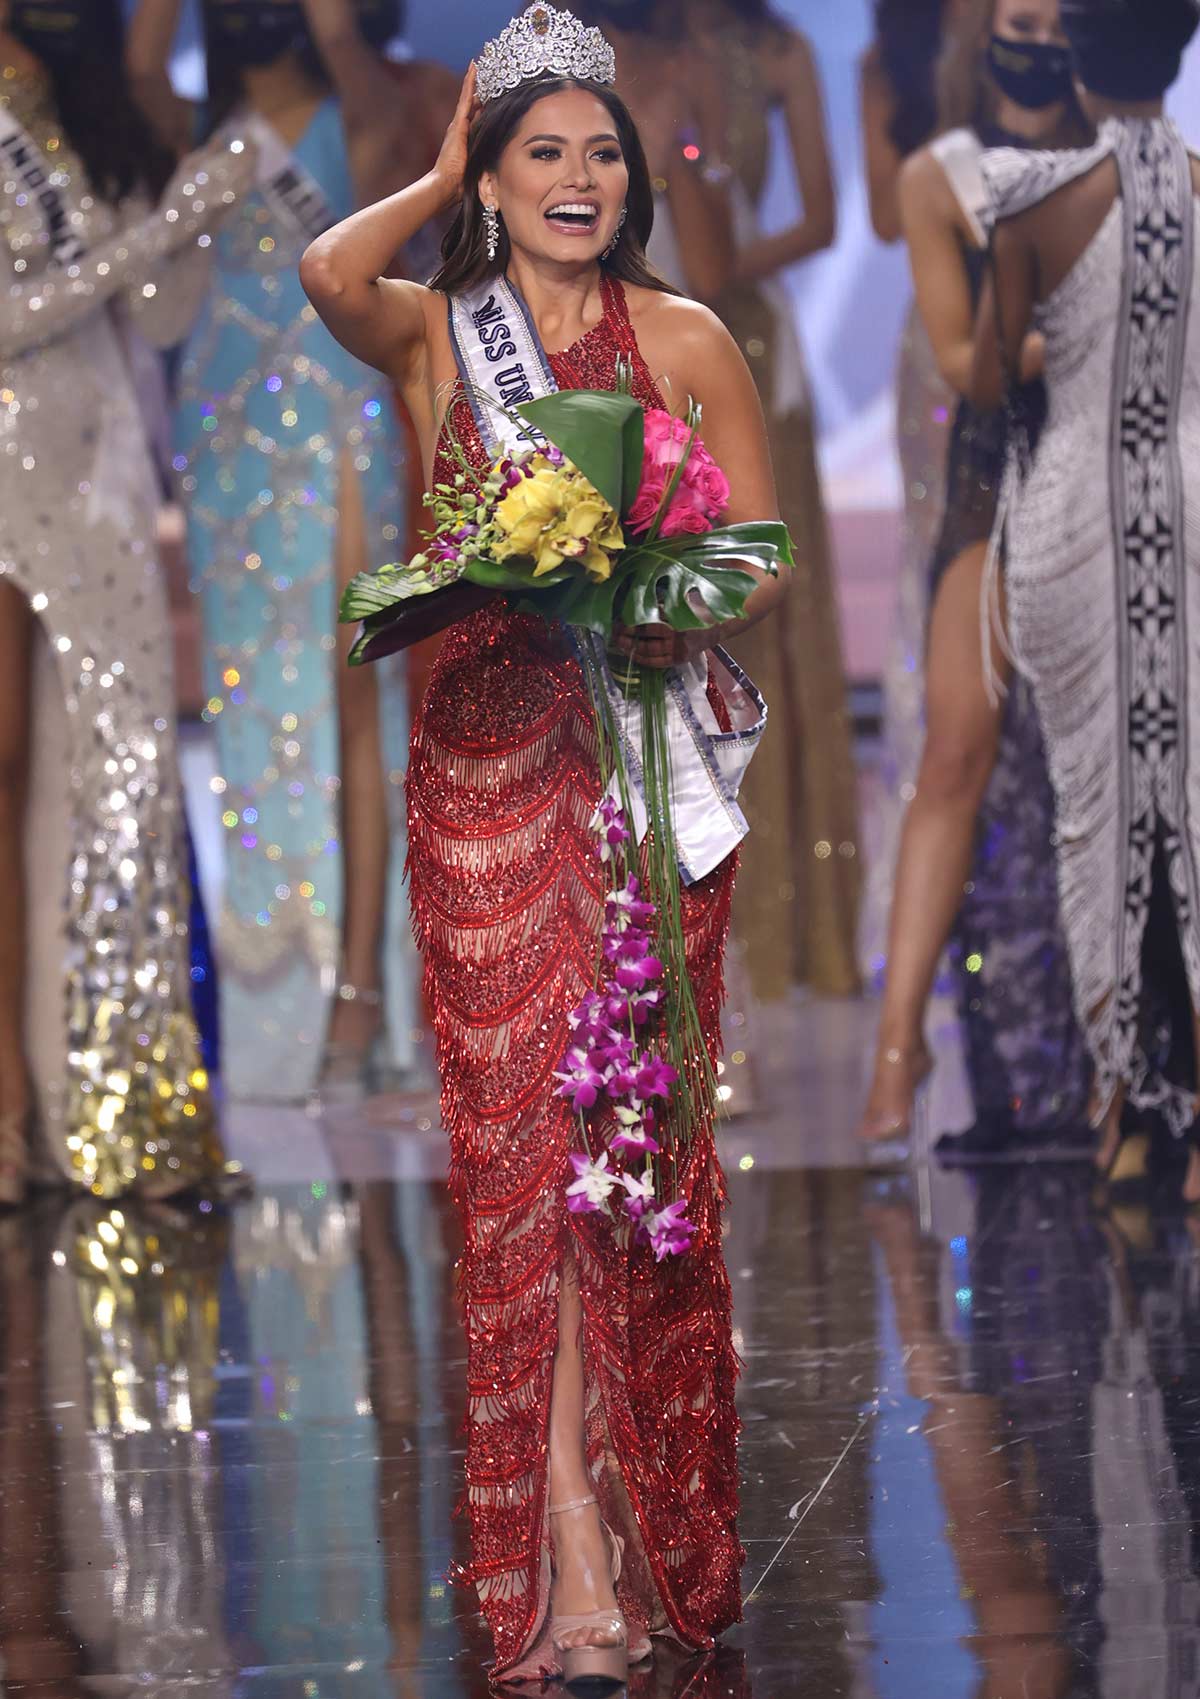 "En Miss Universo no hay patriarcado, al contrario", asegura Andrea Meza